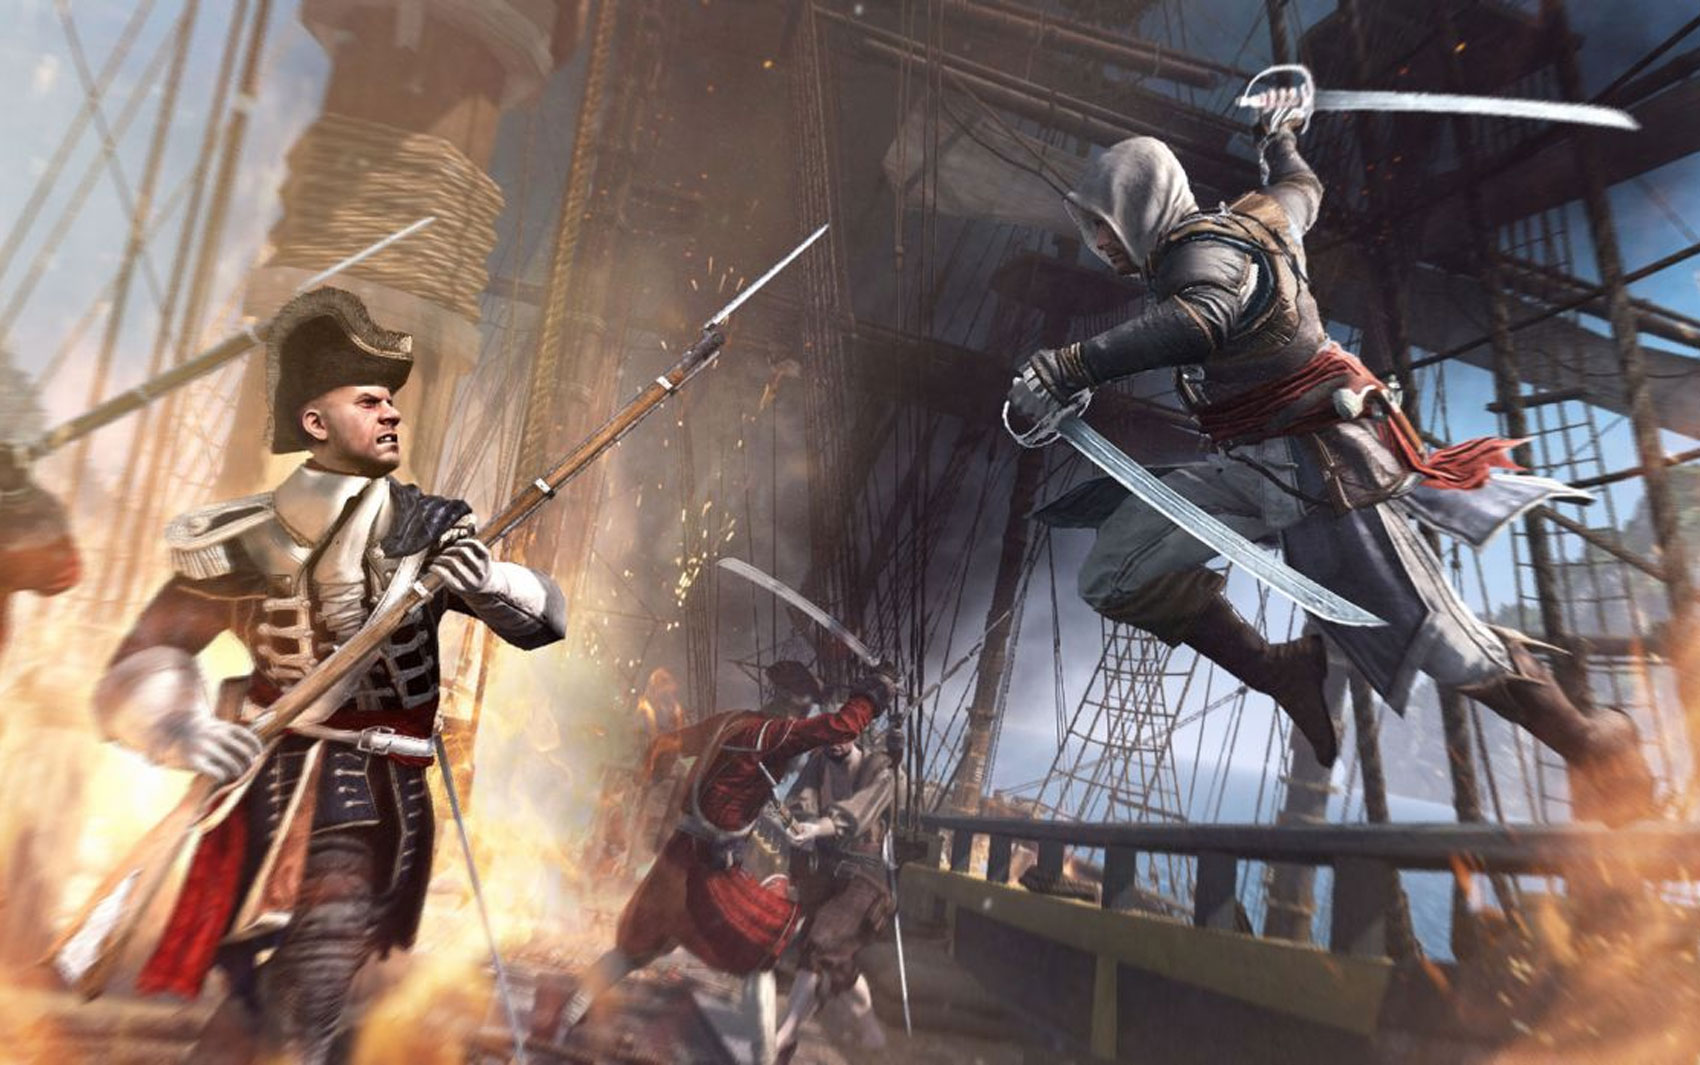 PlayStationBR - O Blog: Assassin's Creed IV: Black Flag - Um Pirata  treinado por Assassinos